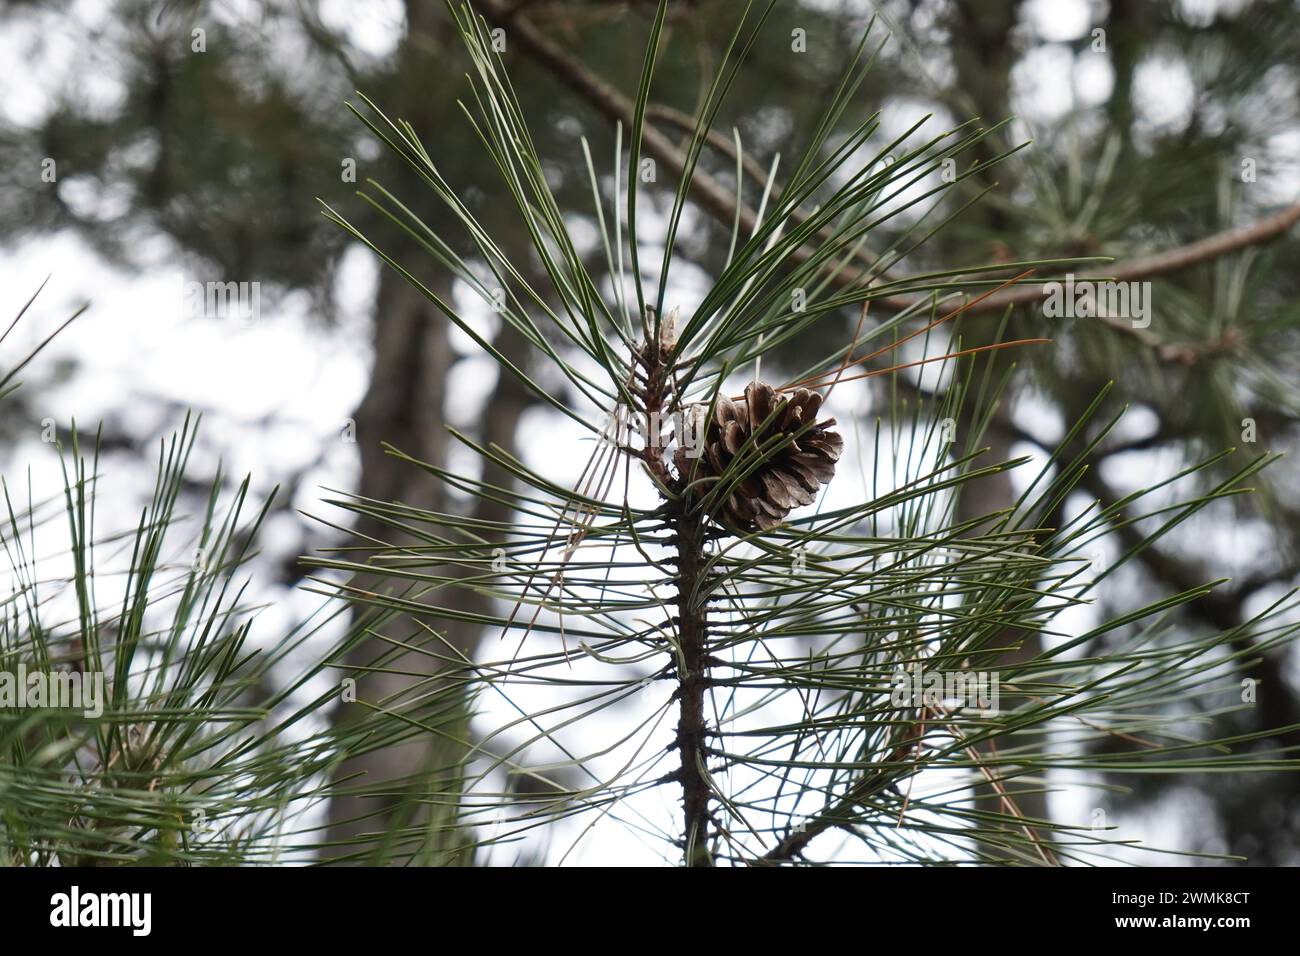 Pine, The Arizona pine(Pinus arizonica) Stock Photo